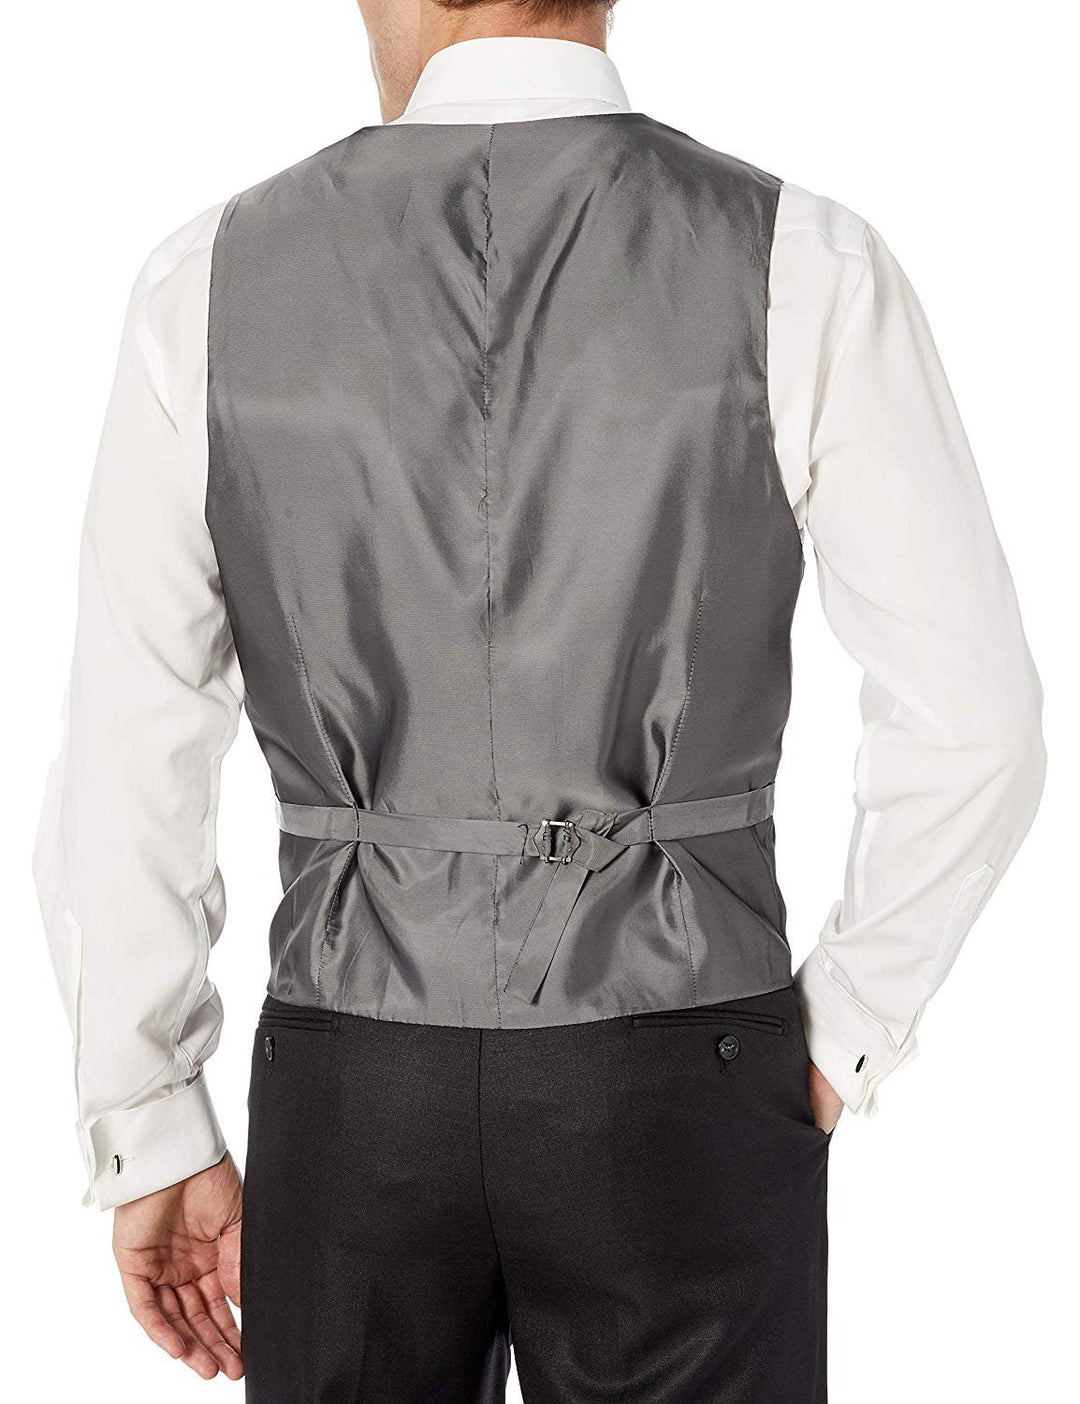 Adam Baker Men's Modern Fit 3-Piece (Jacket, Vets, Trousers) Peak Lapel Linen Feel Suit Set - CLEARANCE